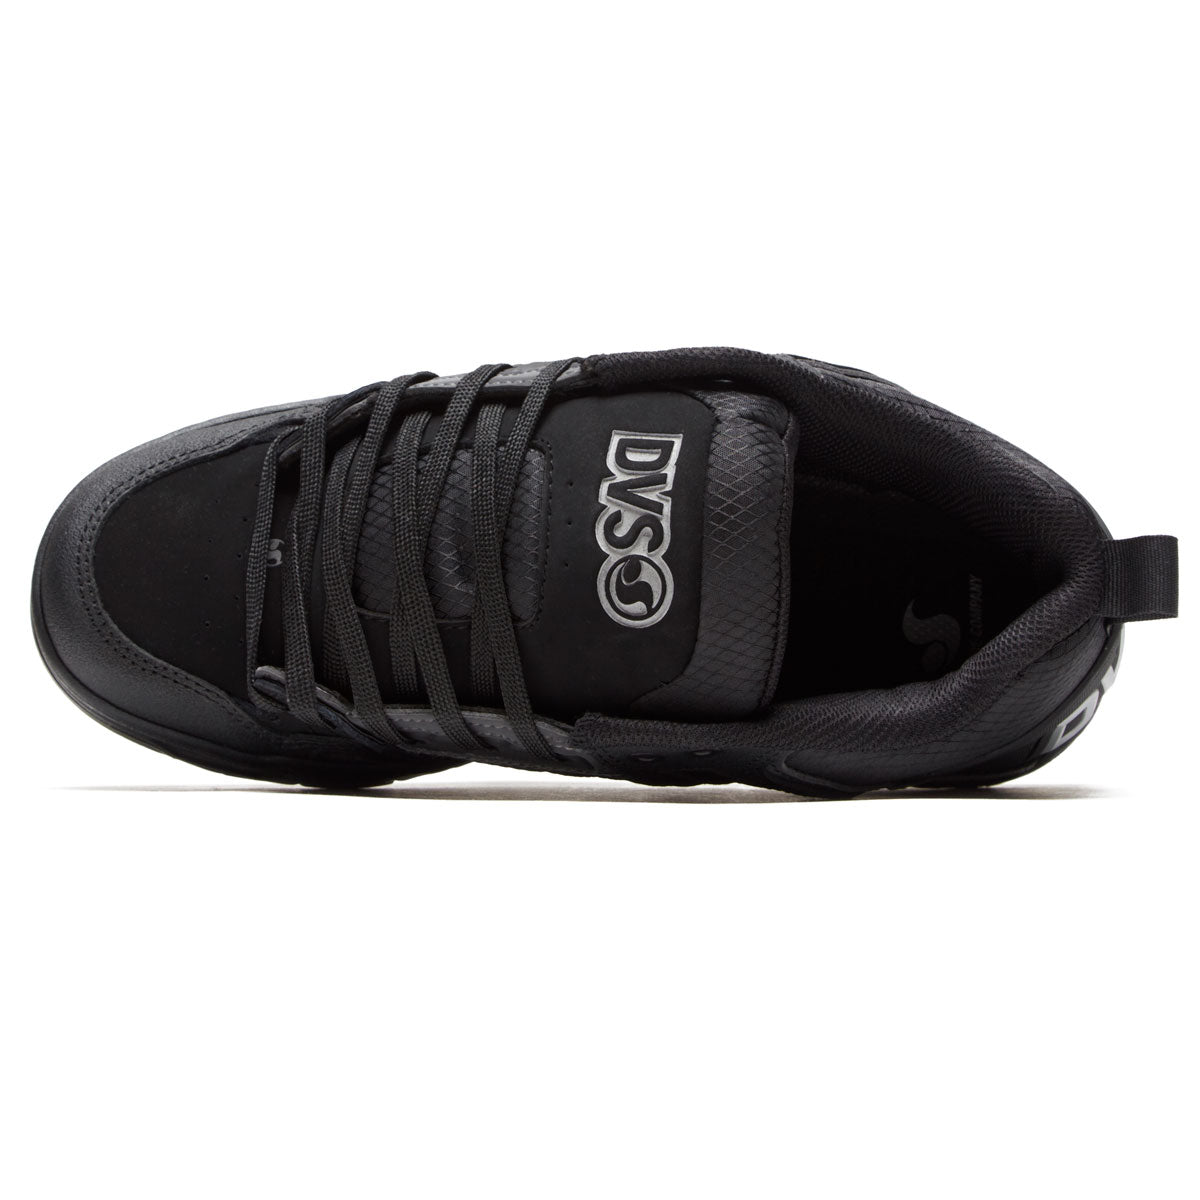 Comanche Shoes - Black Reflective/Gum/Nubuck – CCS